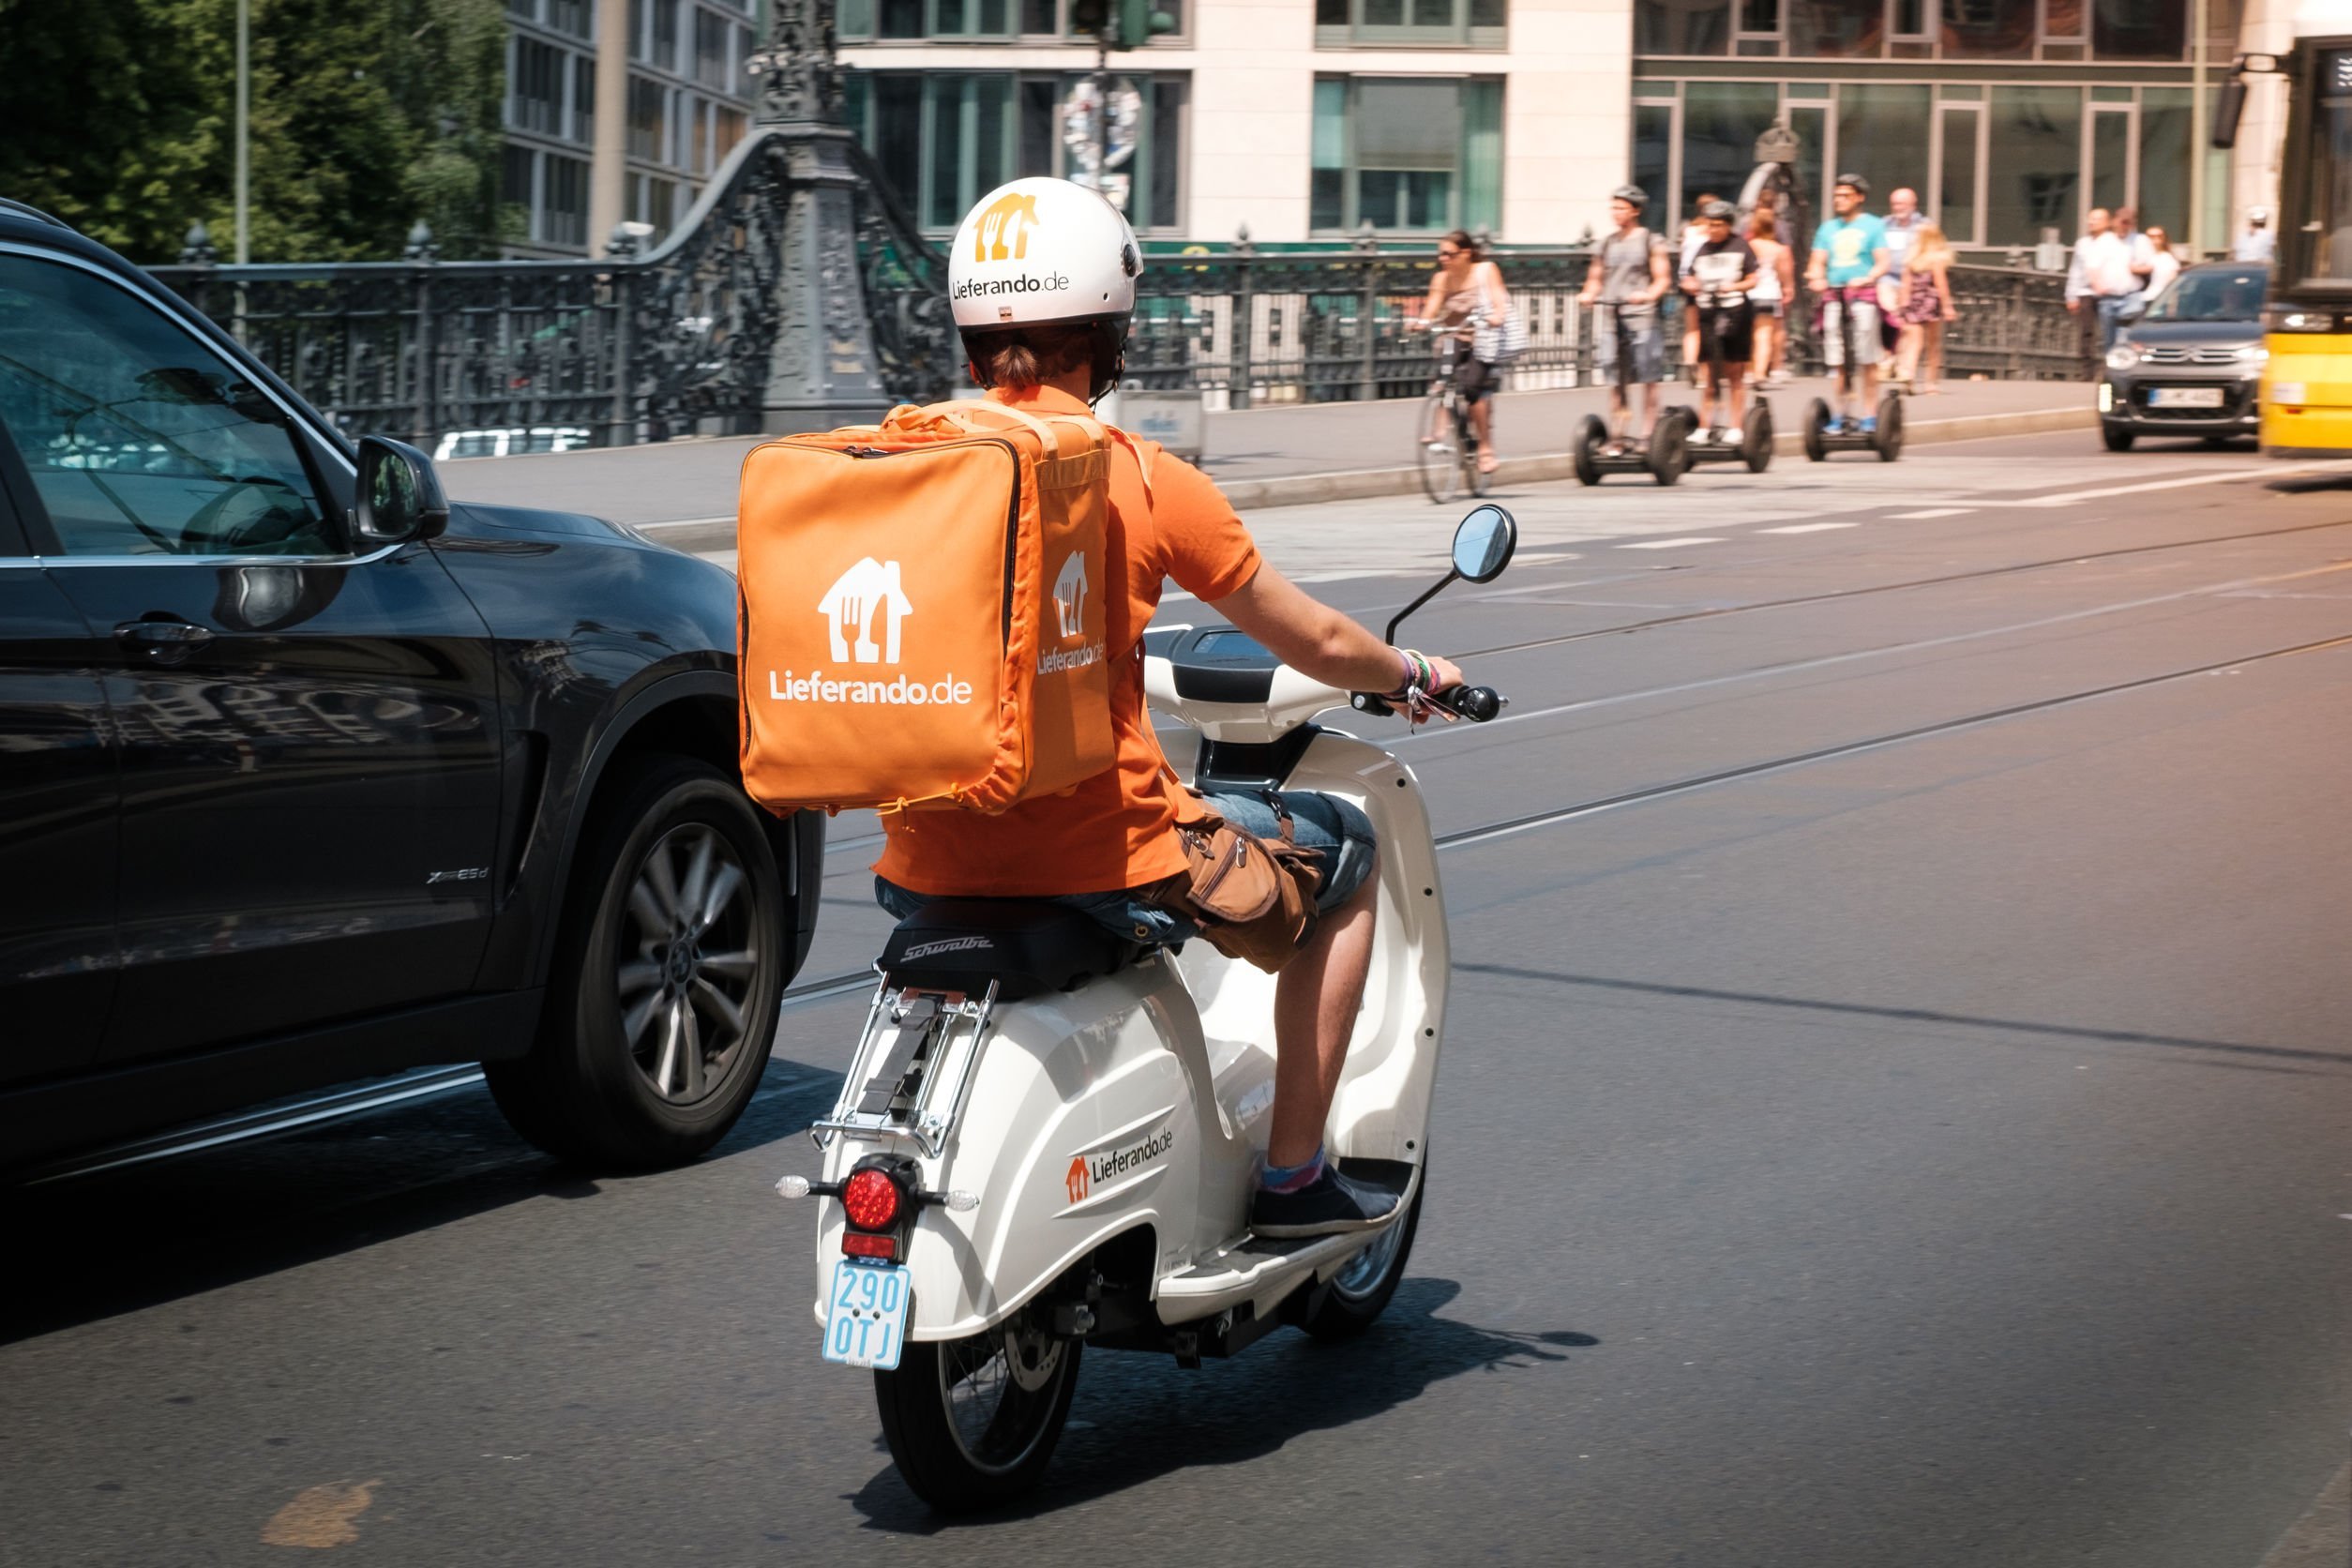 Entregador de delivery em cima de moto no transito